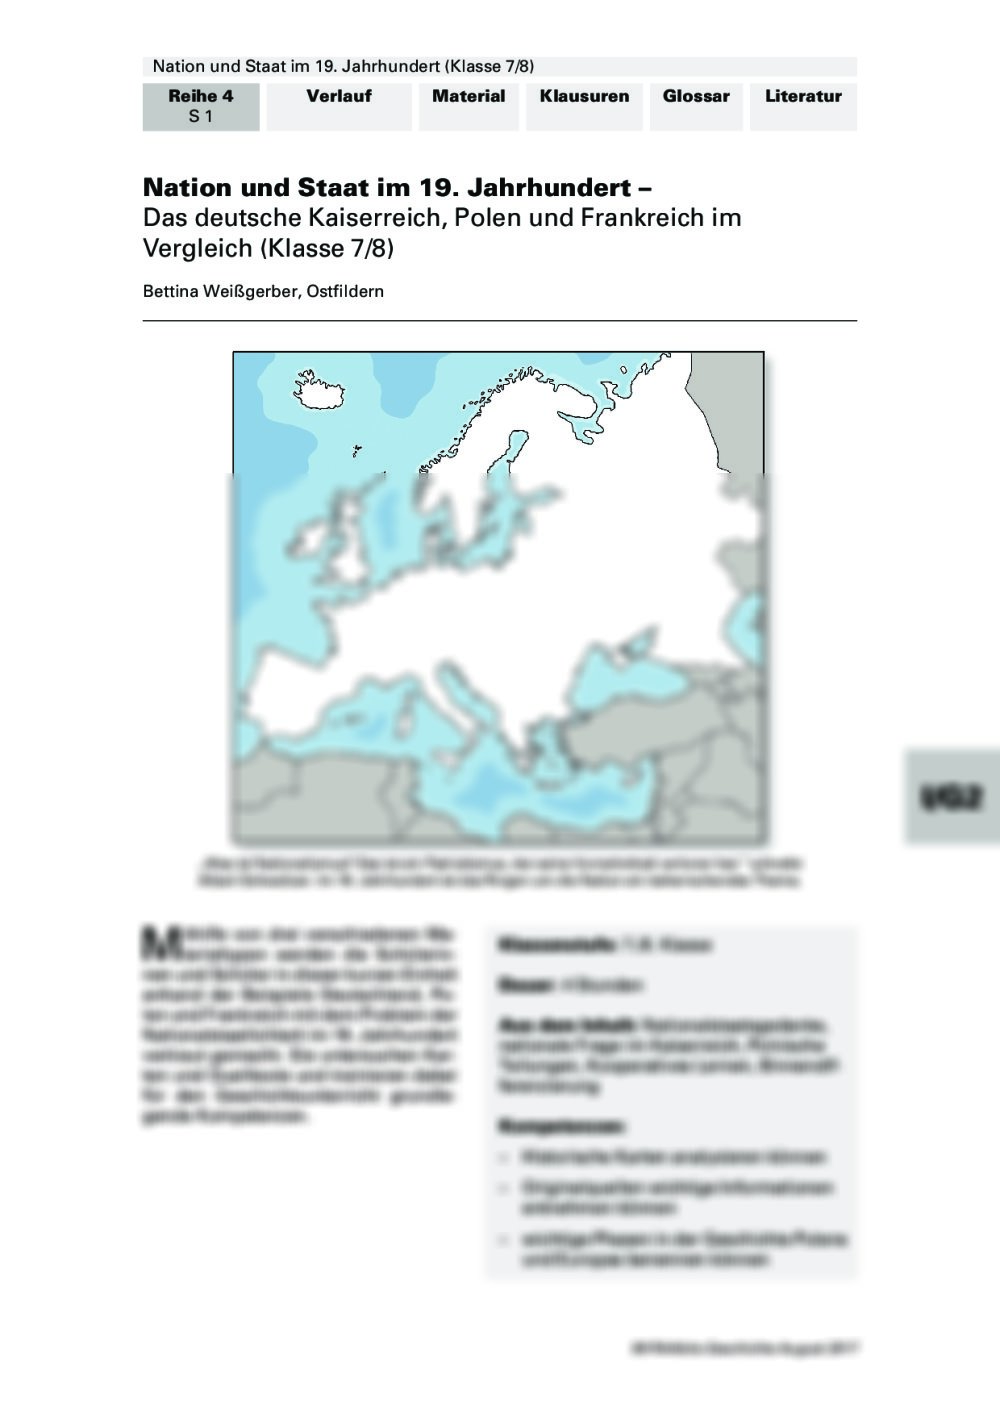 Das deutsche Kaiserreich, Polen und Frankreich im Vergleich - Seite 1